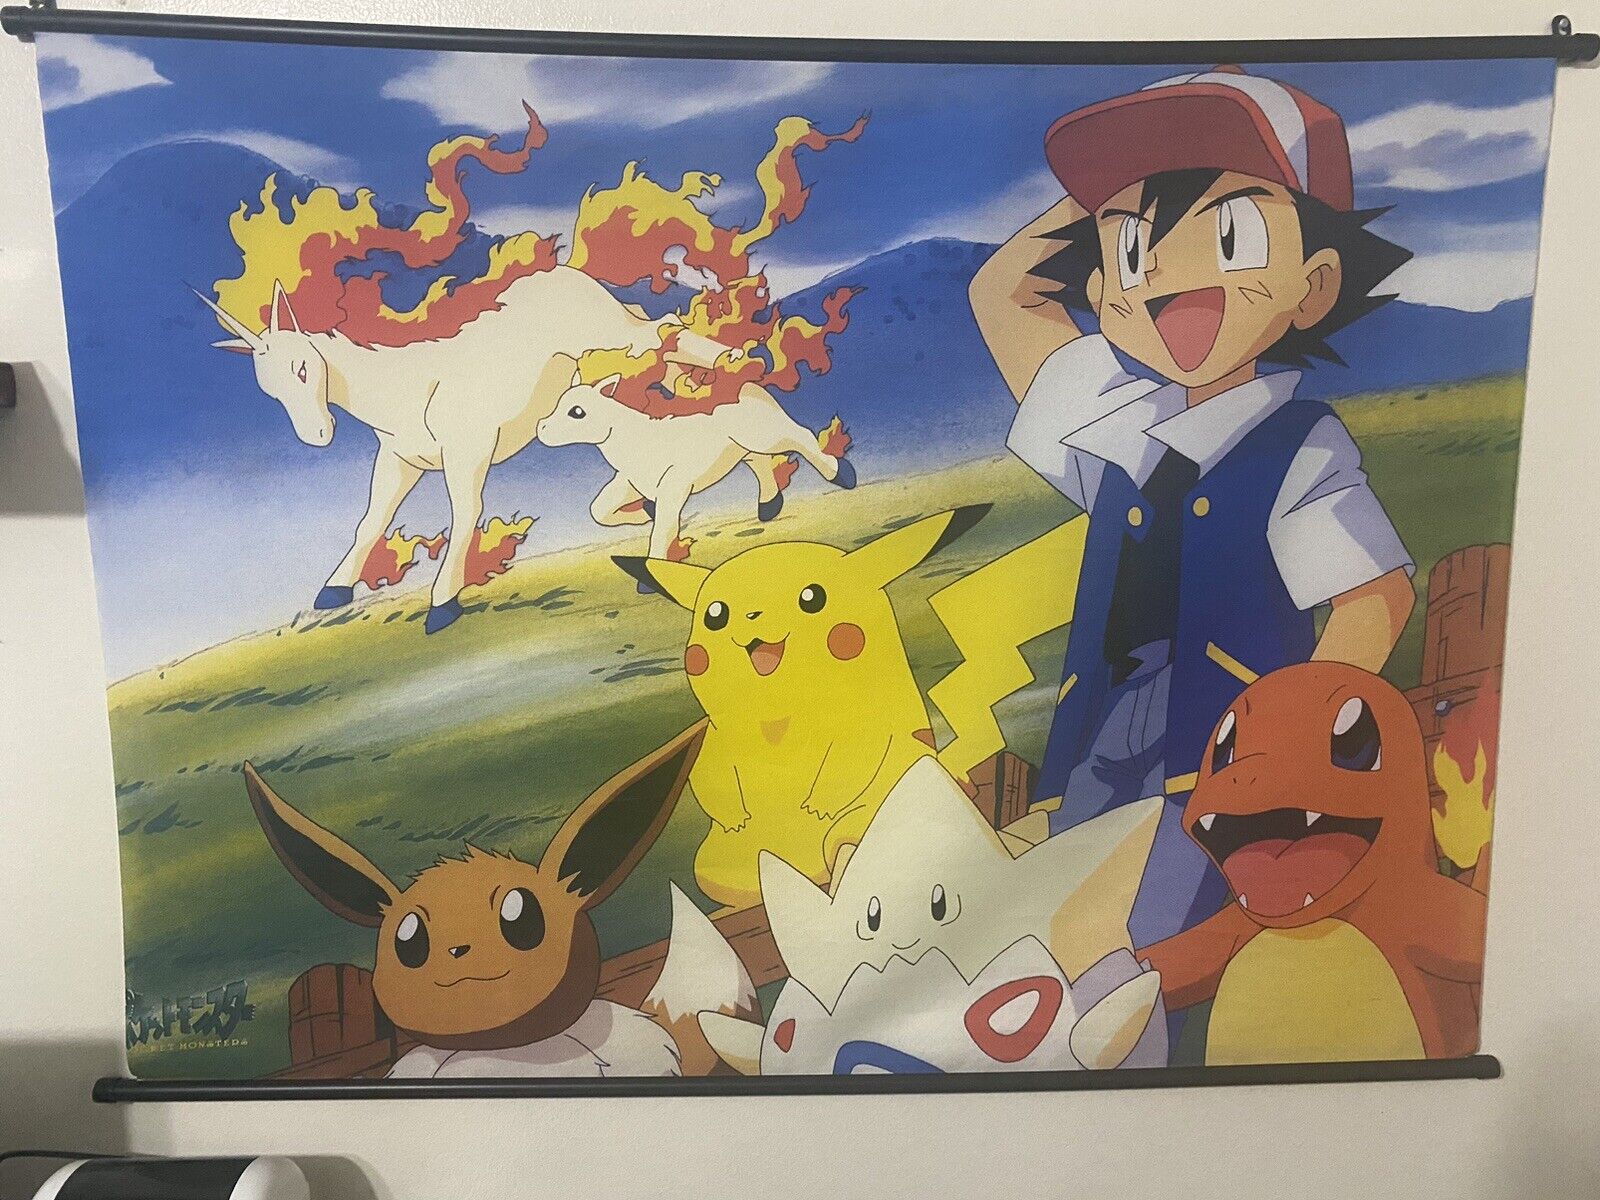 Pokémon Pocket Monsters Banner or flag or poster - Vintage 90’s Era